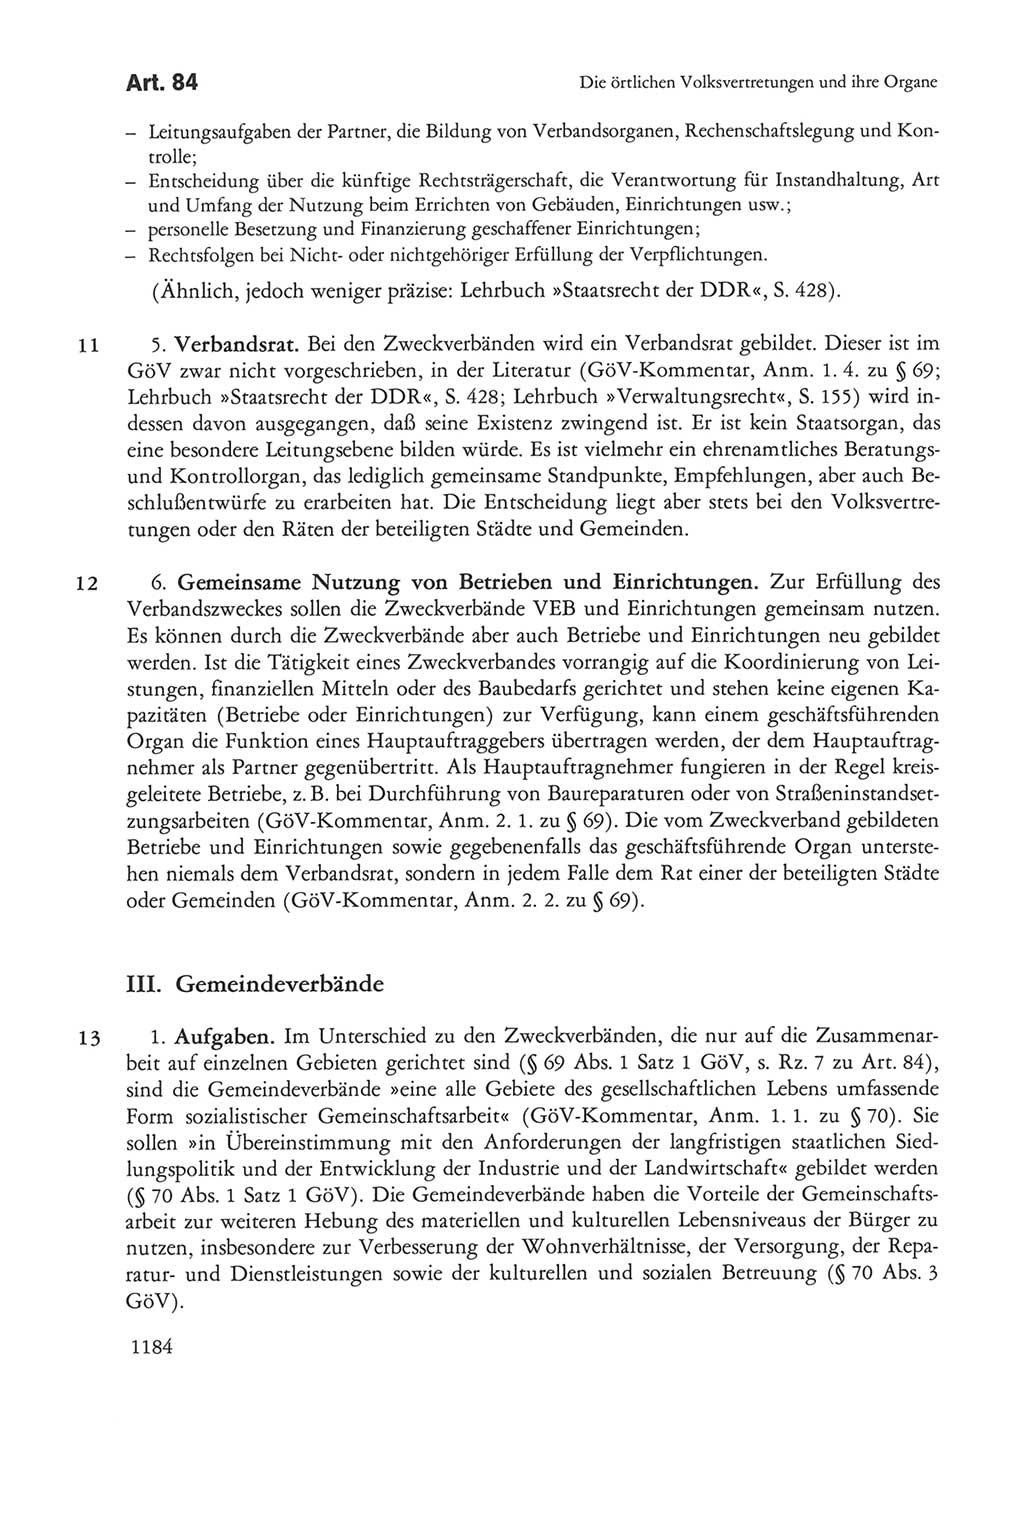 Die sozialistische Verfassung der Deutschen Demokratischen Republik (DDR), Kommentar mit einem Nachtrag 1997, Seite 1184 (Soz. Verf. DDR Komm. Nachtr. 1997, S. 1184)